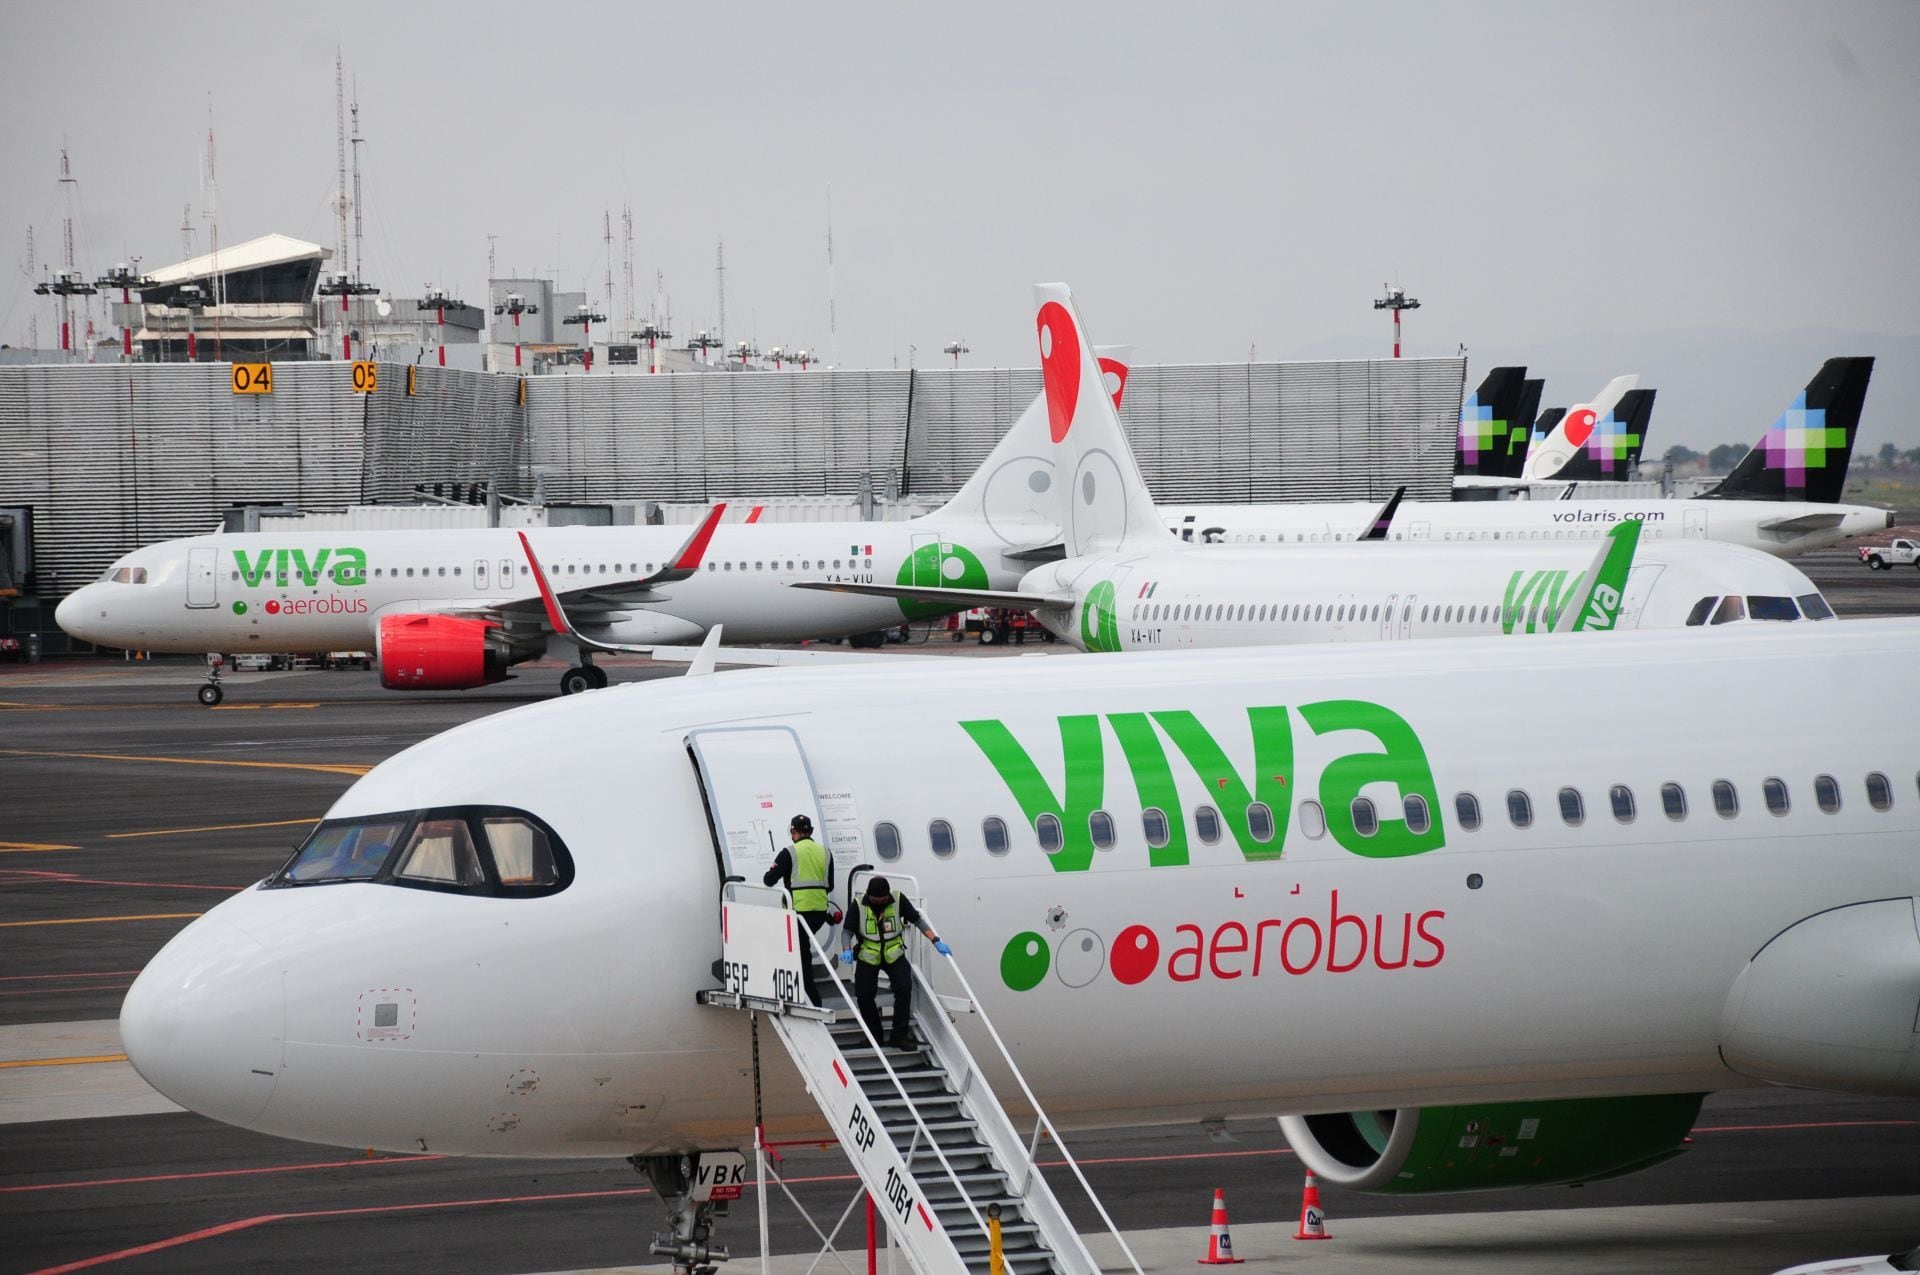 Usuarios denunciaron en redes sociales que estuvieron atrapados en un avión de Viva Aerobús por más de 4 horas y que nunca volaron a su destino.